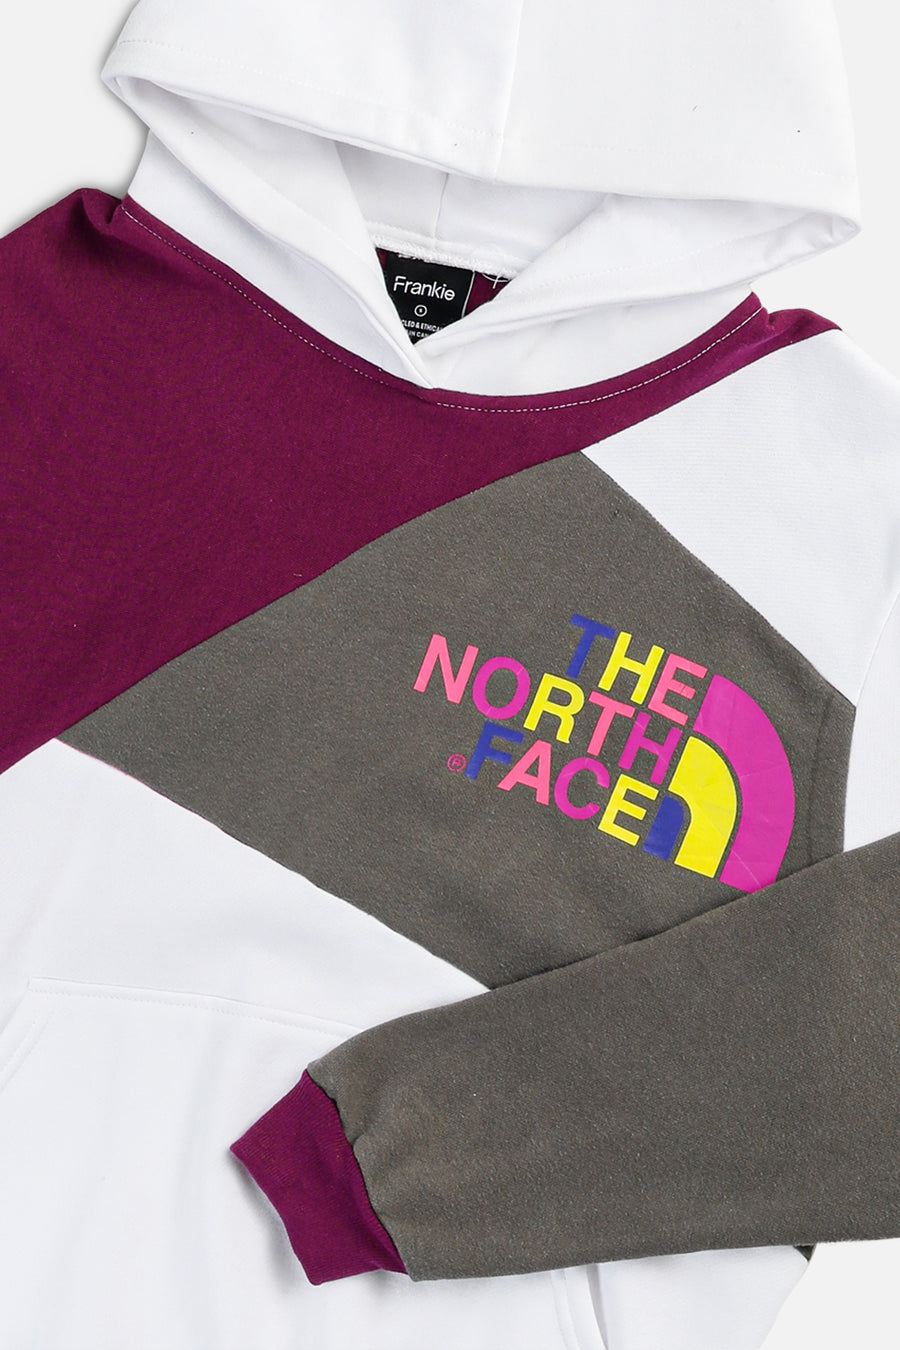 Rework North Face Patchwork Sweatshirt - S